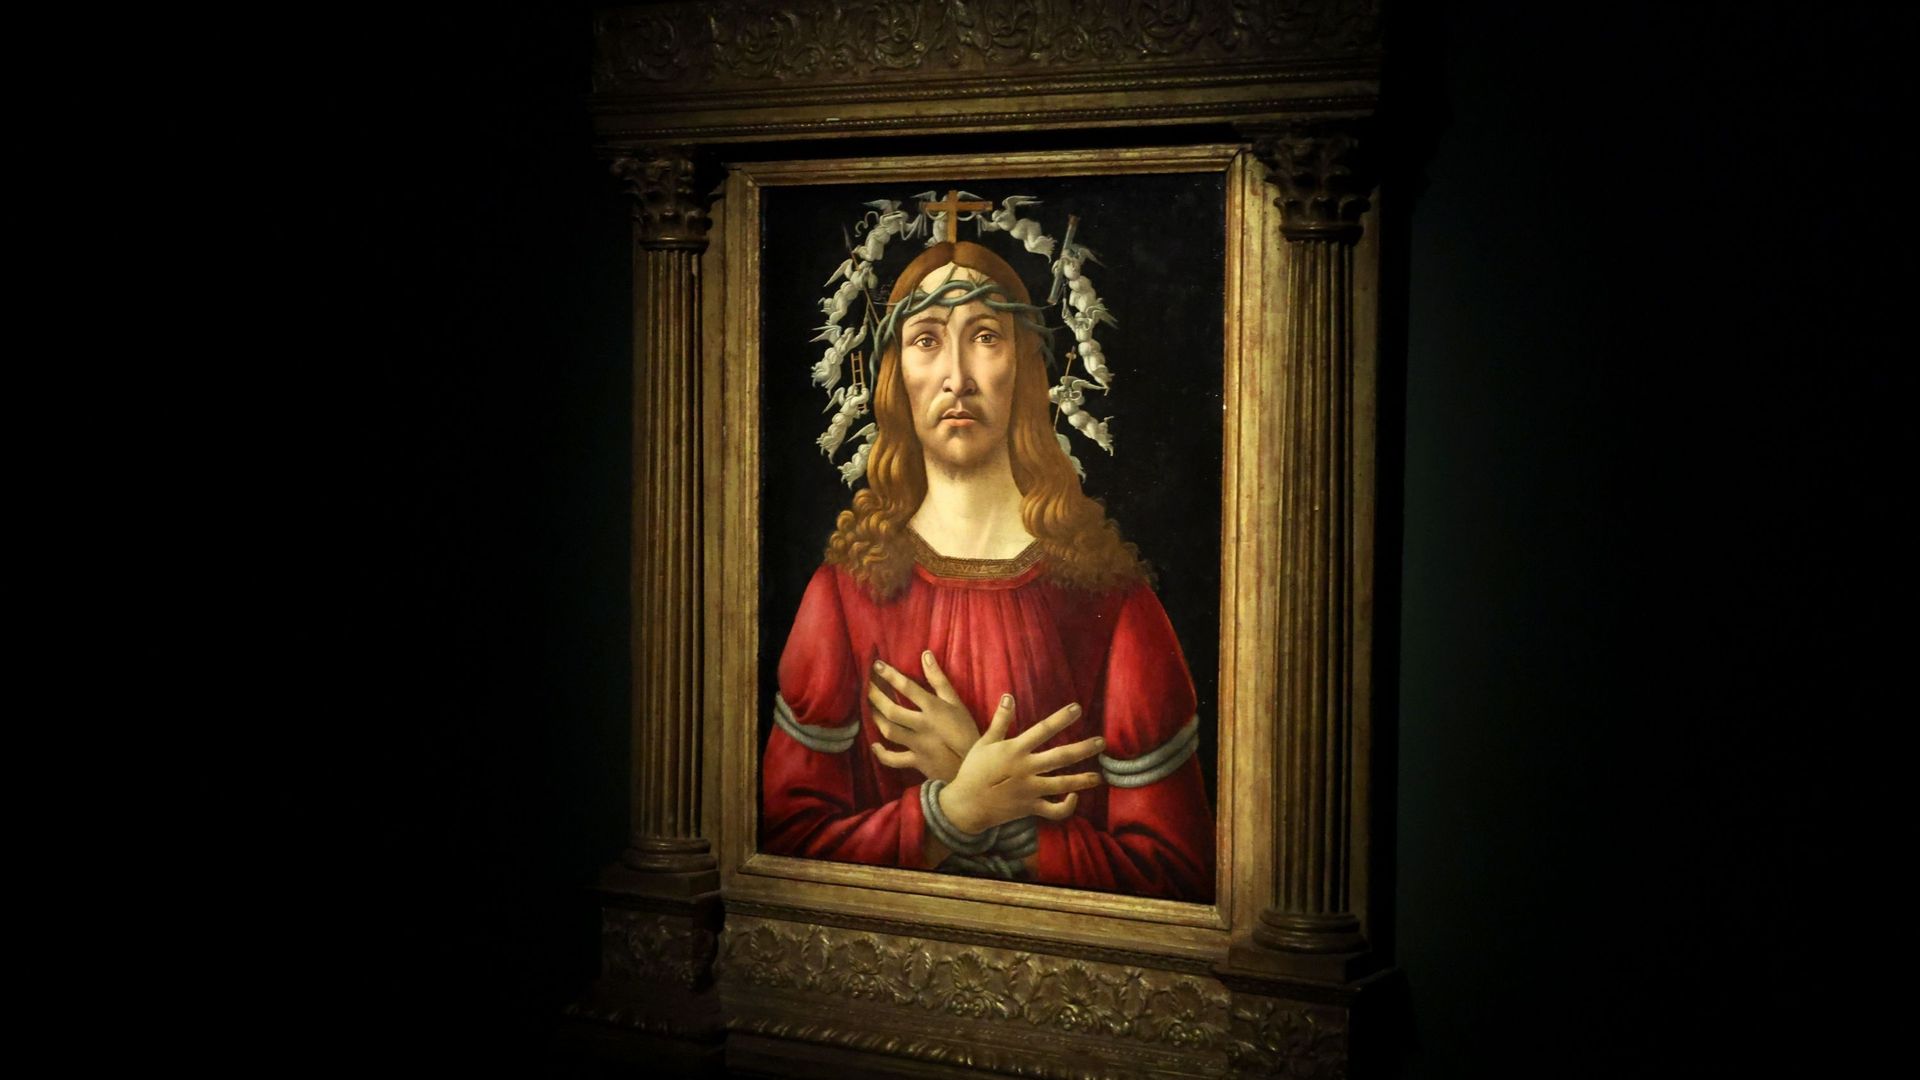 "The man of sorrows" de Sandro Botticelli lors de la vente aux enchères de la semaine des maîtres de janvier 2022 de Sotheby’s.